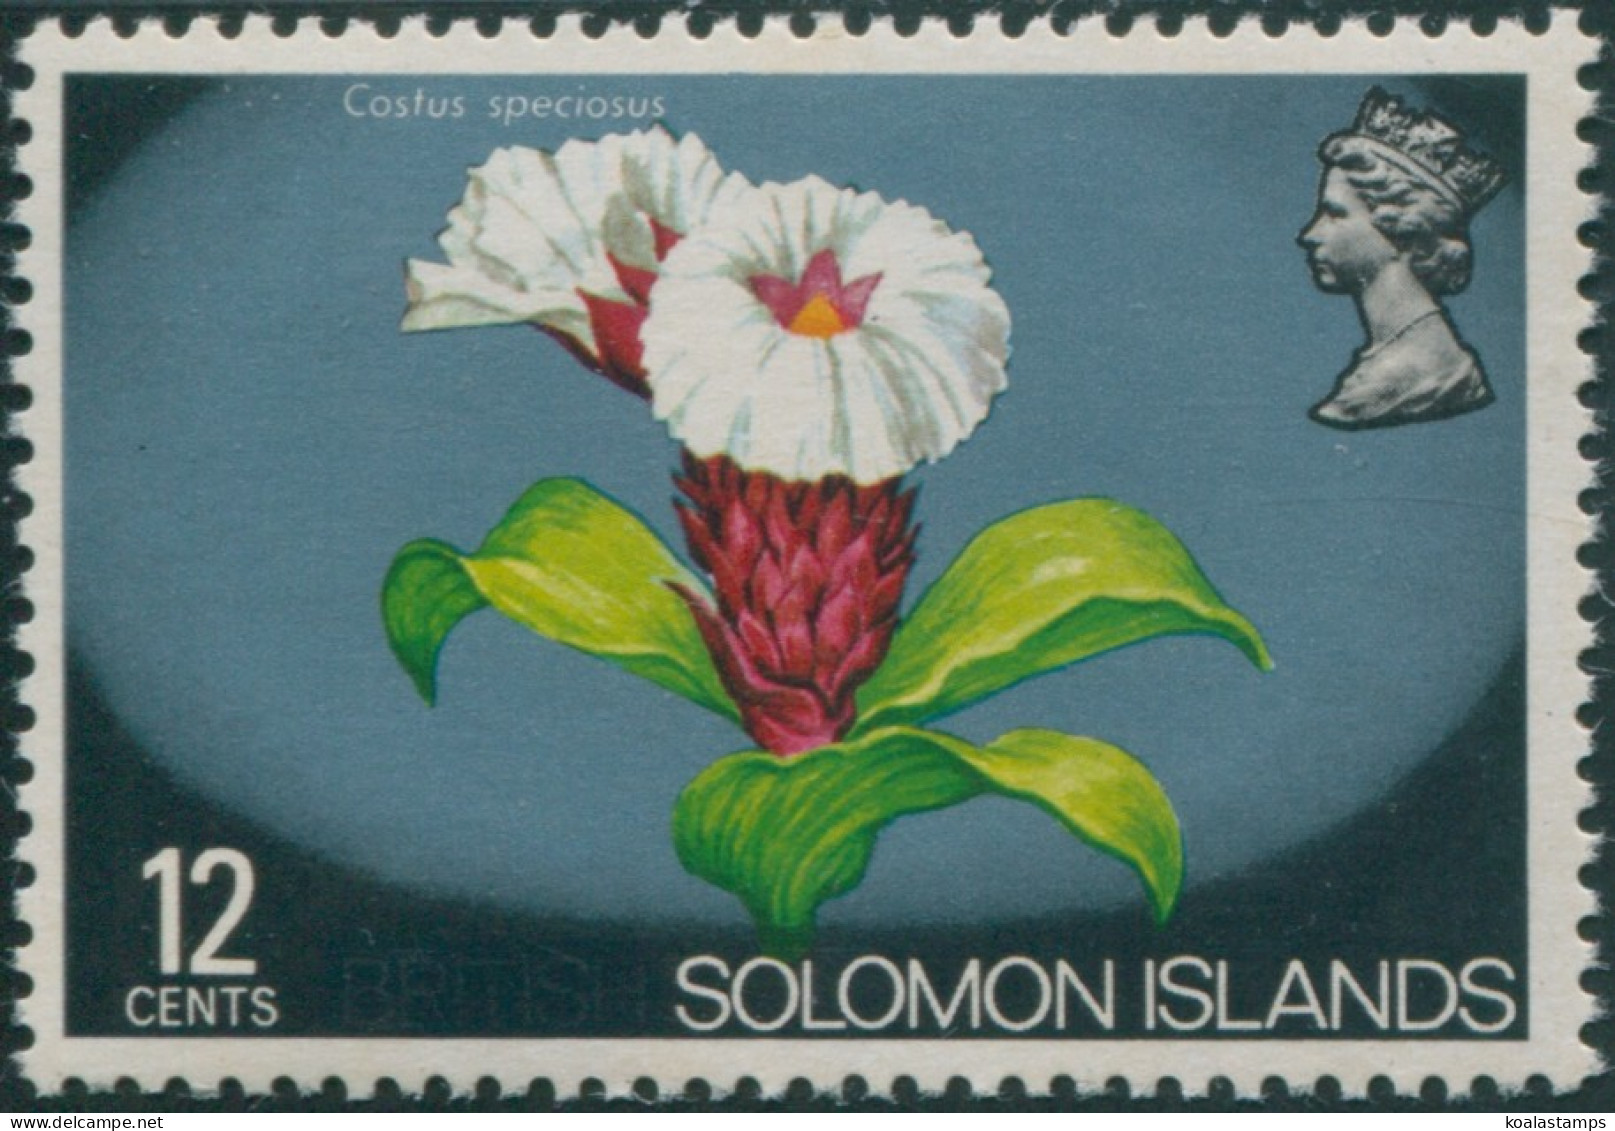 Solomon Islands 1975 SG292 12c Flower MNH - Salomon (Iles 1978-...)